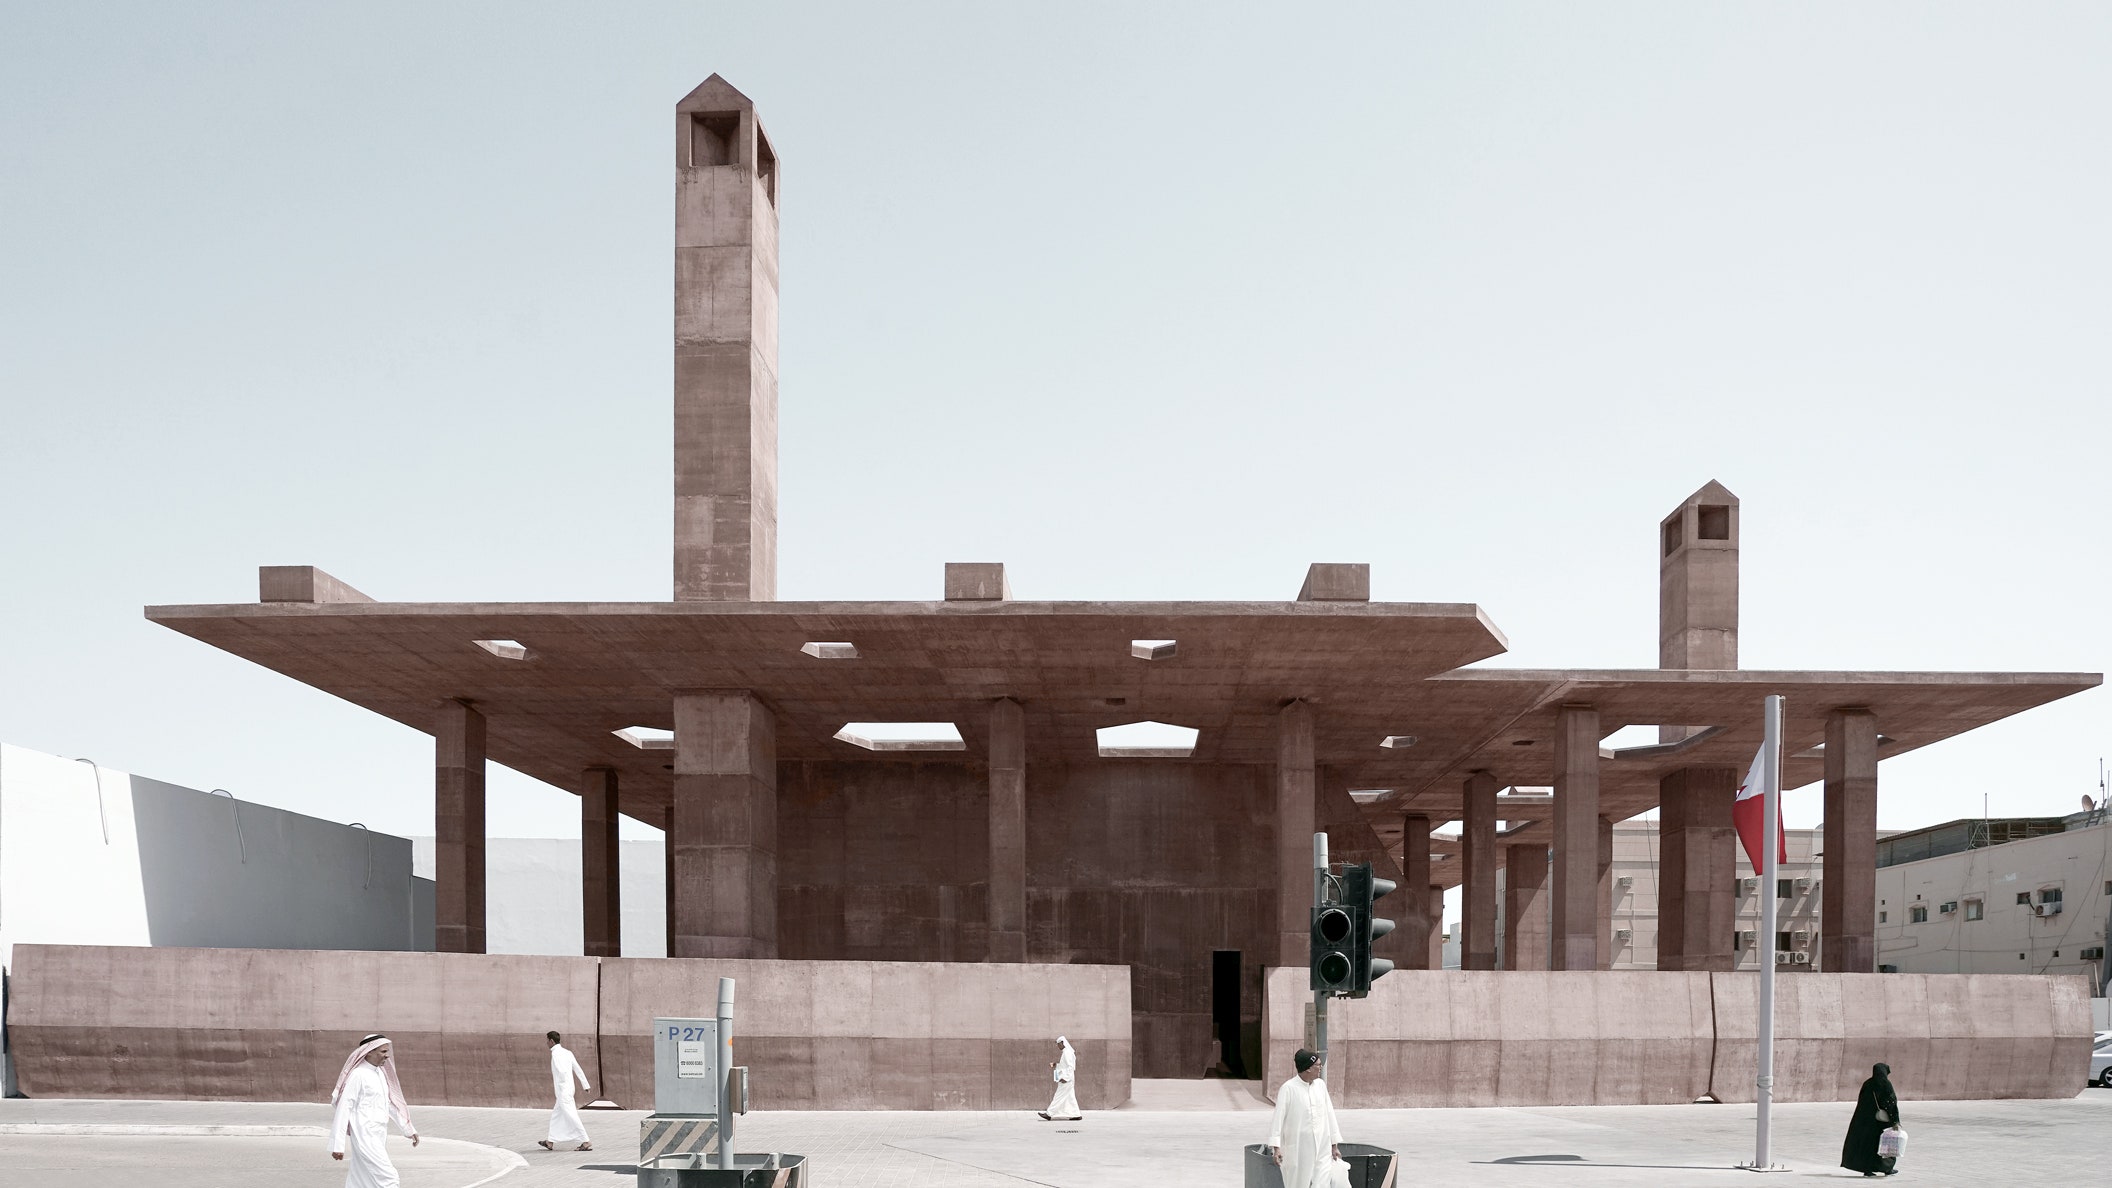 Бруталистский музей с руинами в Бахрейне